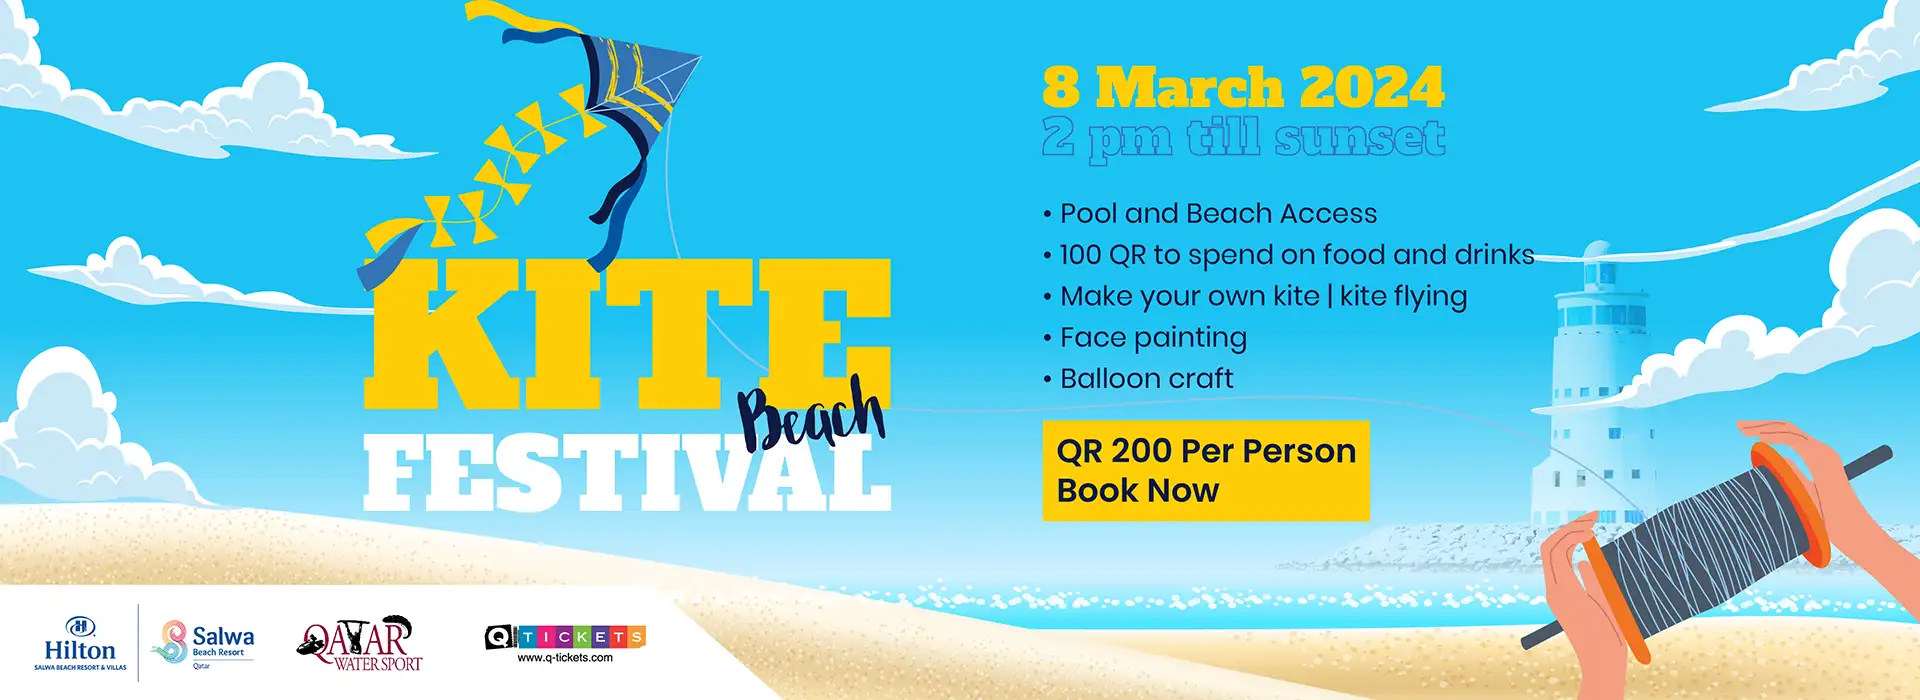 Kite Beach Festival